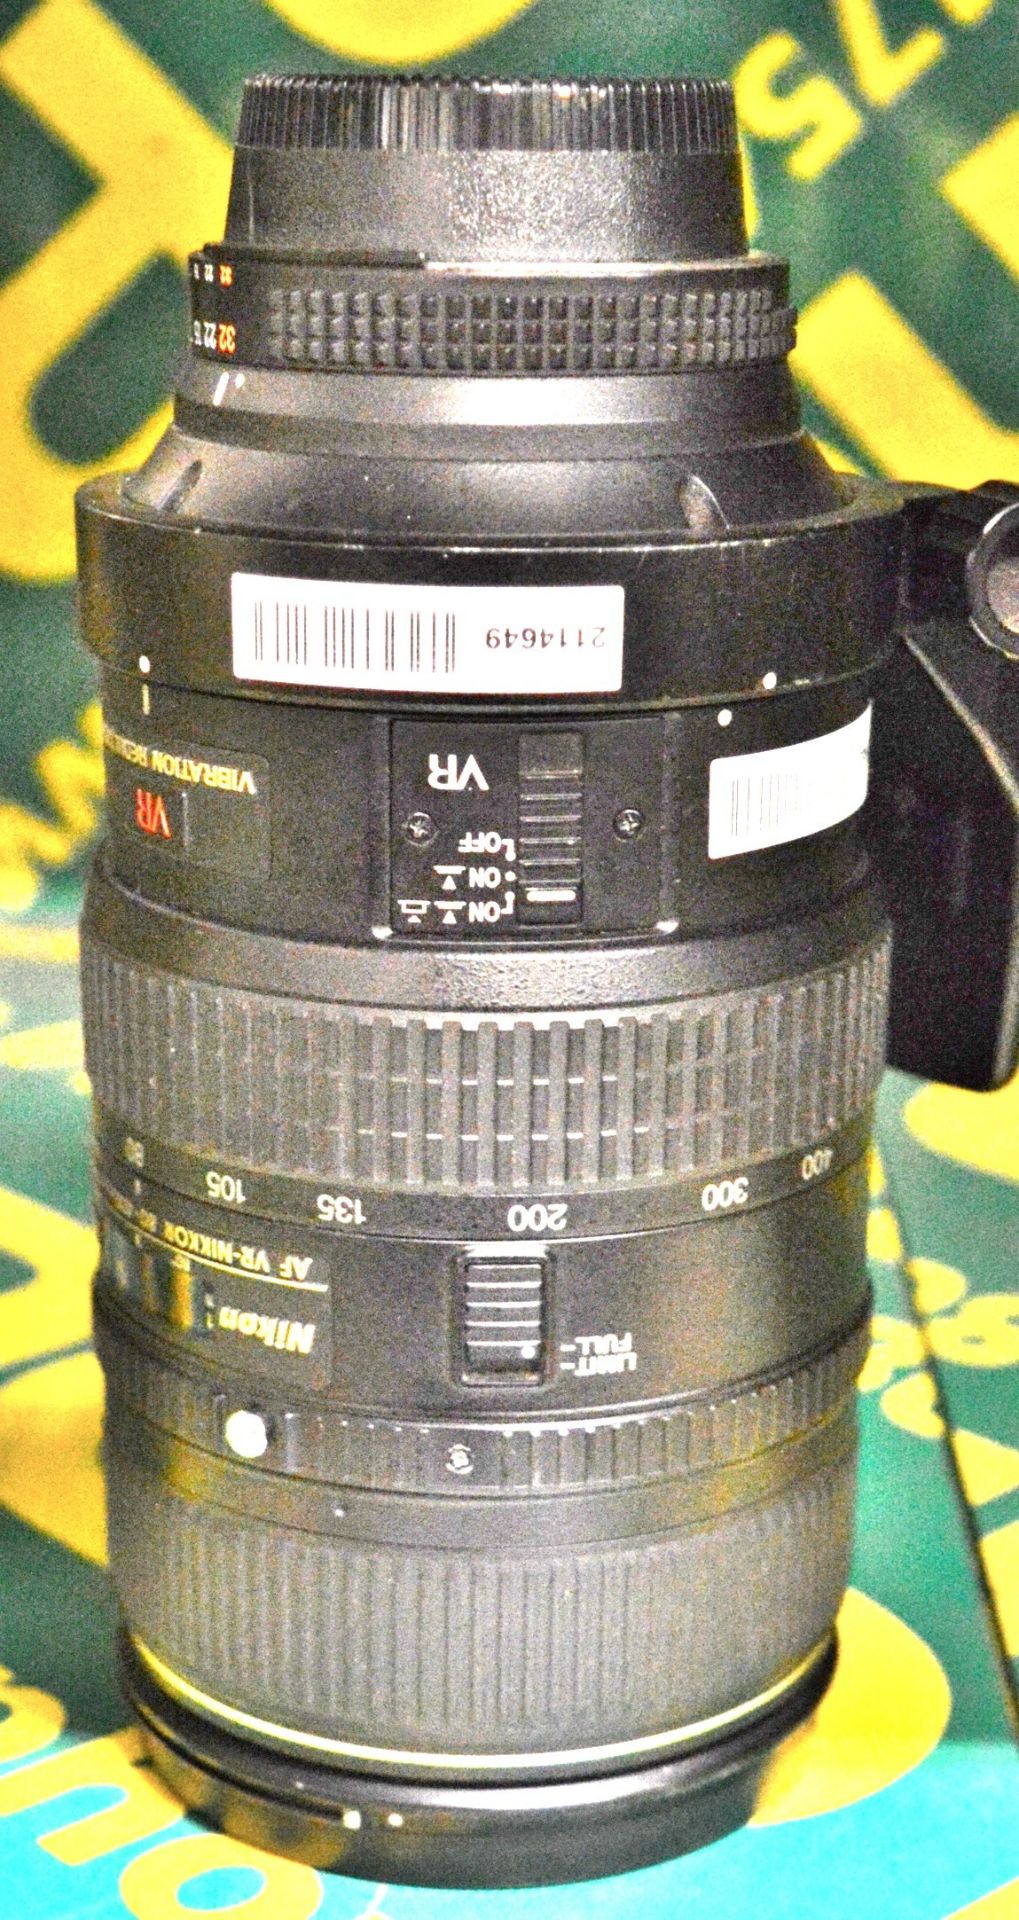 Nikon Lens AF-Nikkor 80-400mm 1:4.5-5.6D - Serial No. 239811.